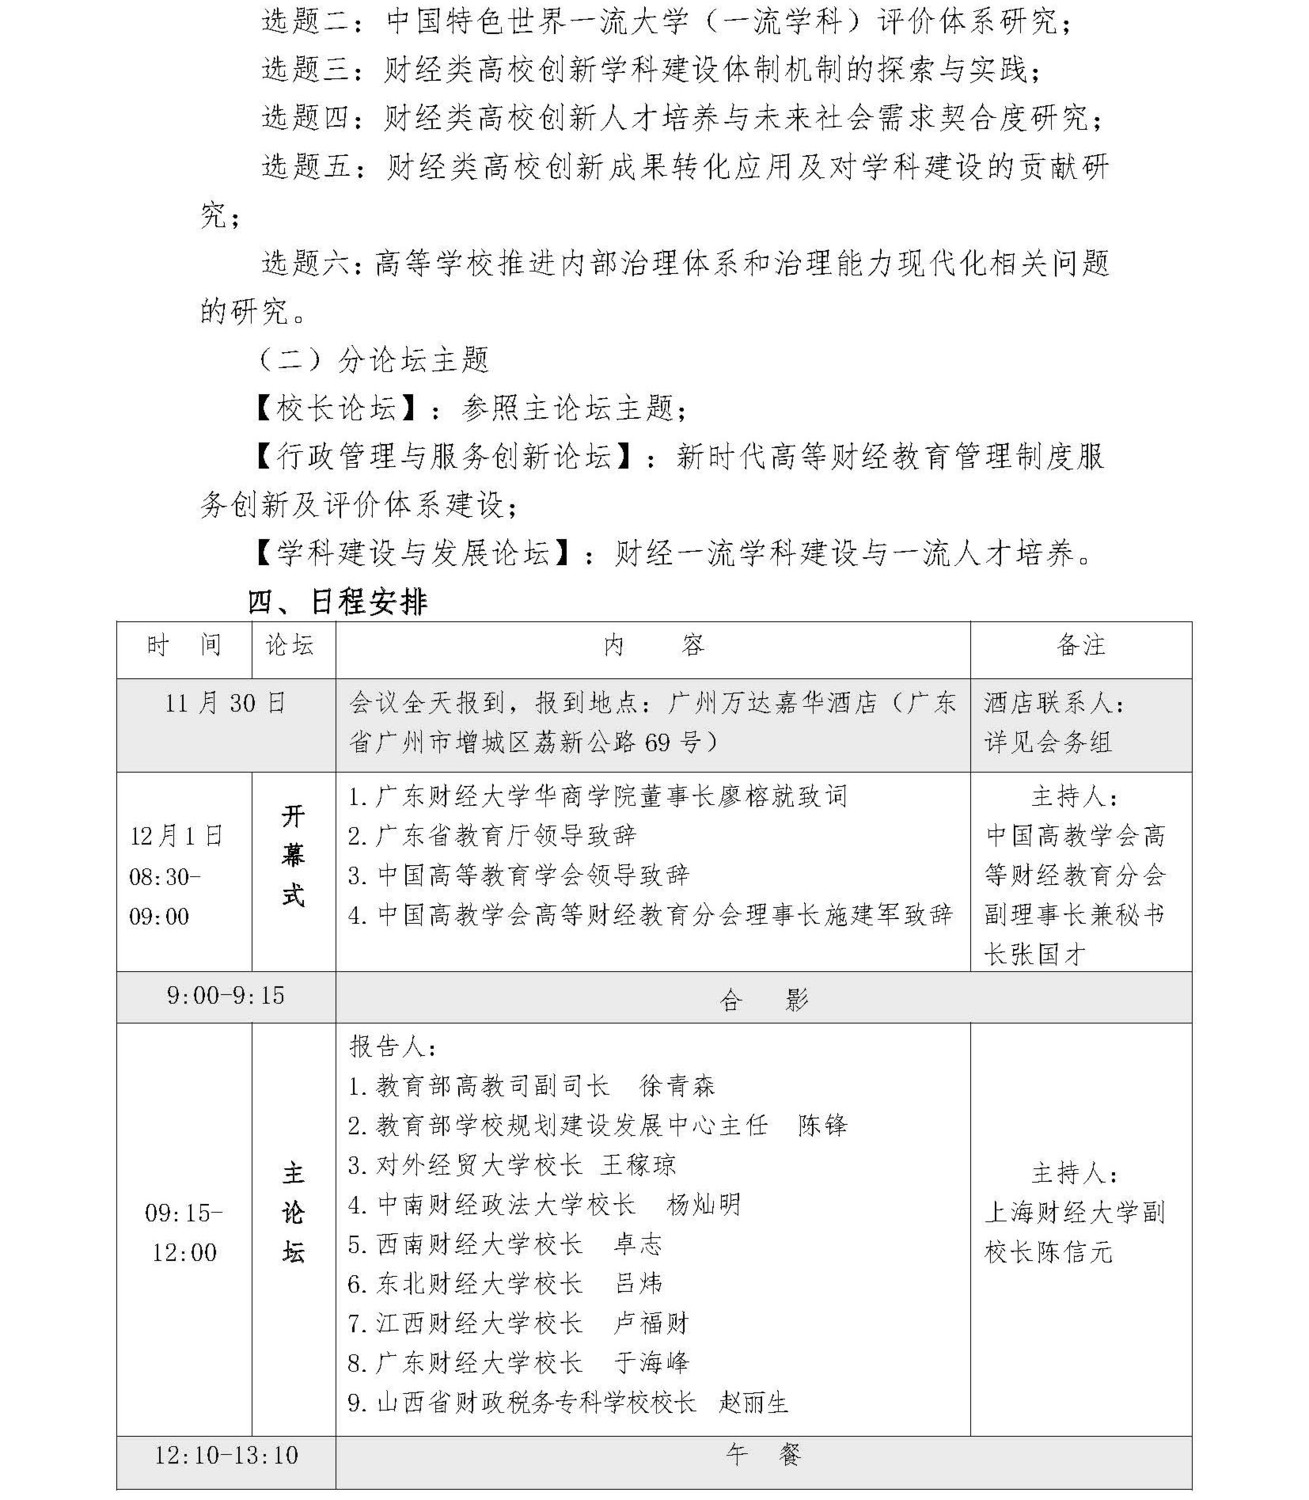 第九届中国高等财经教育校长论坛补充通知_页面_2.jpg